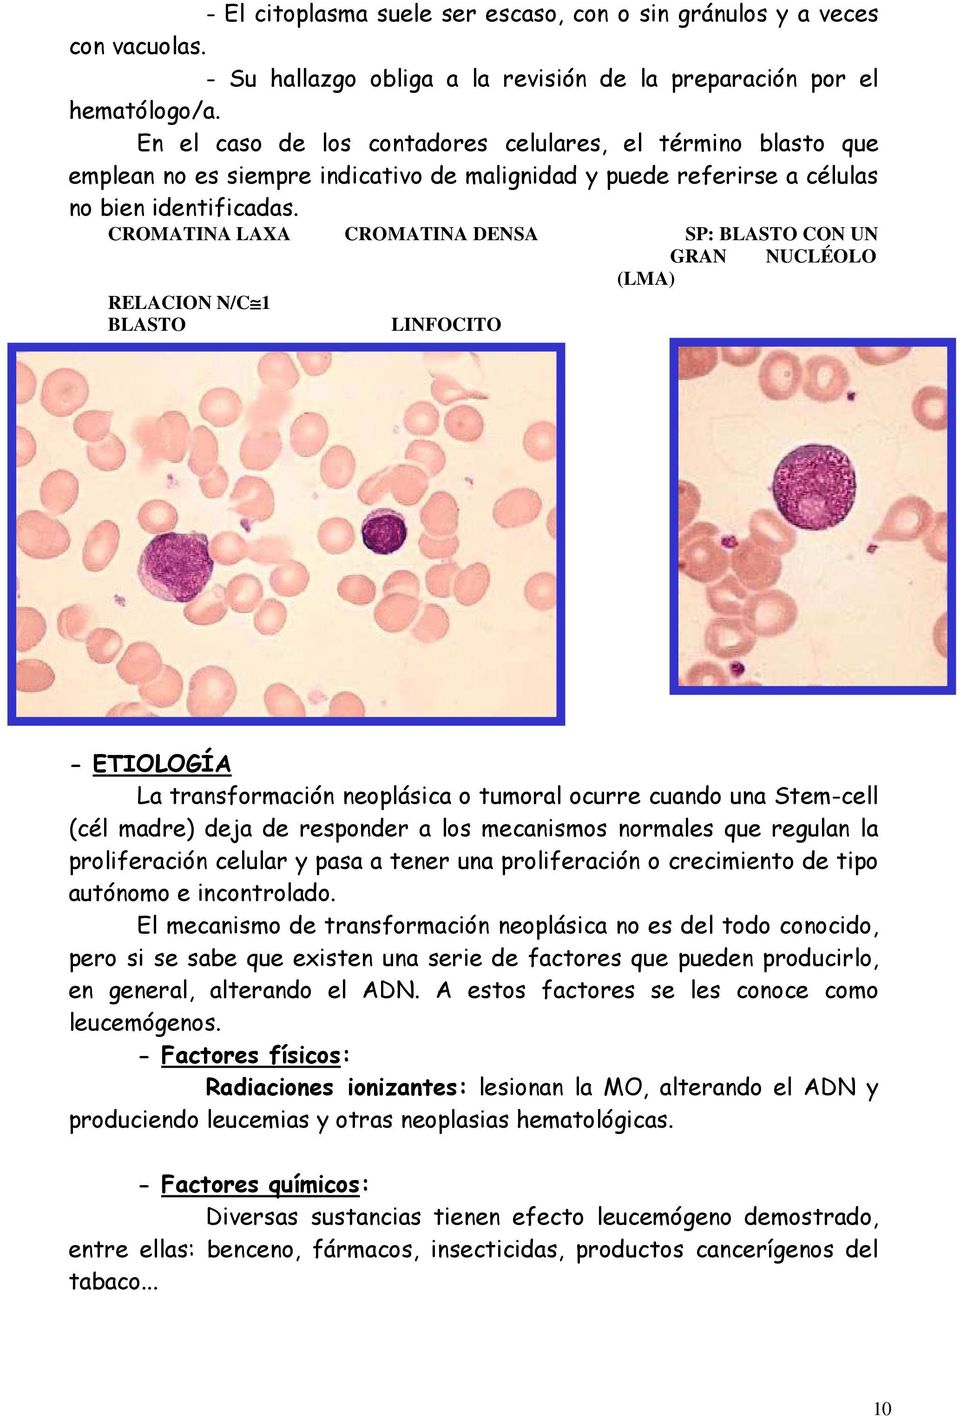 CROMATINA LAXA CROMATINA DENSA SP: BLASTO CON UN GRAN NUCLÉOLO (LMA) RELACION N/C 1 BLASTO LINFOCITO - ETIOLOGÍA La transformación neoplásica o tumoral ocurre cuando una Stem-cell (cél madre) deja de